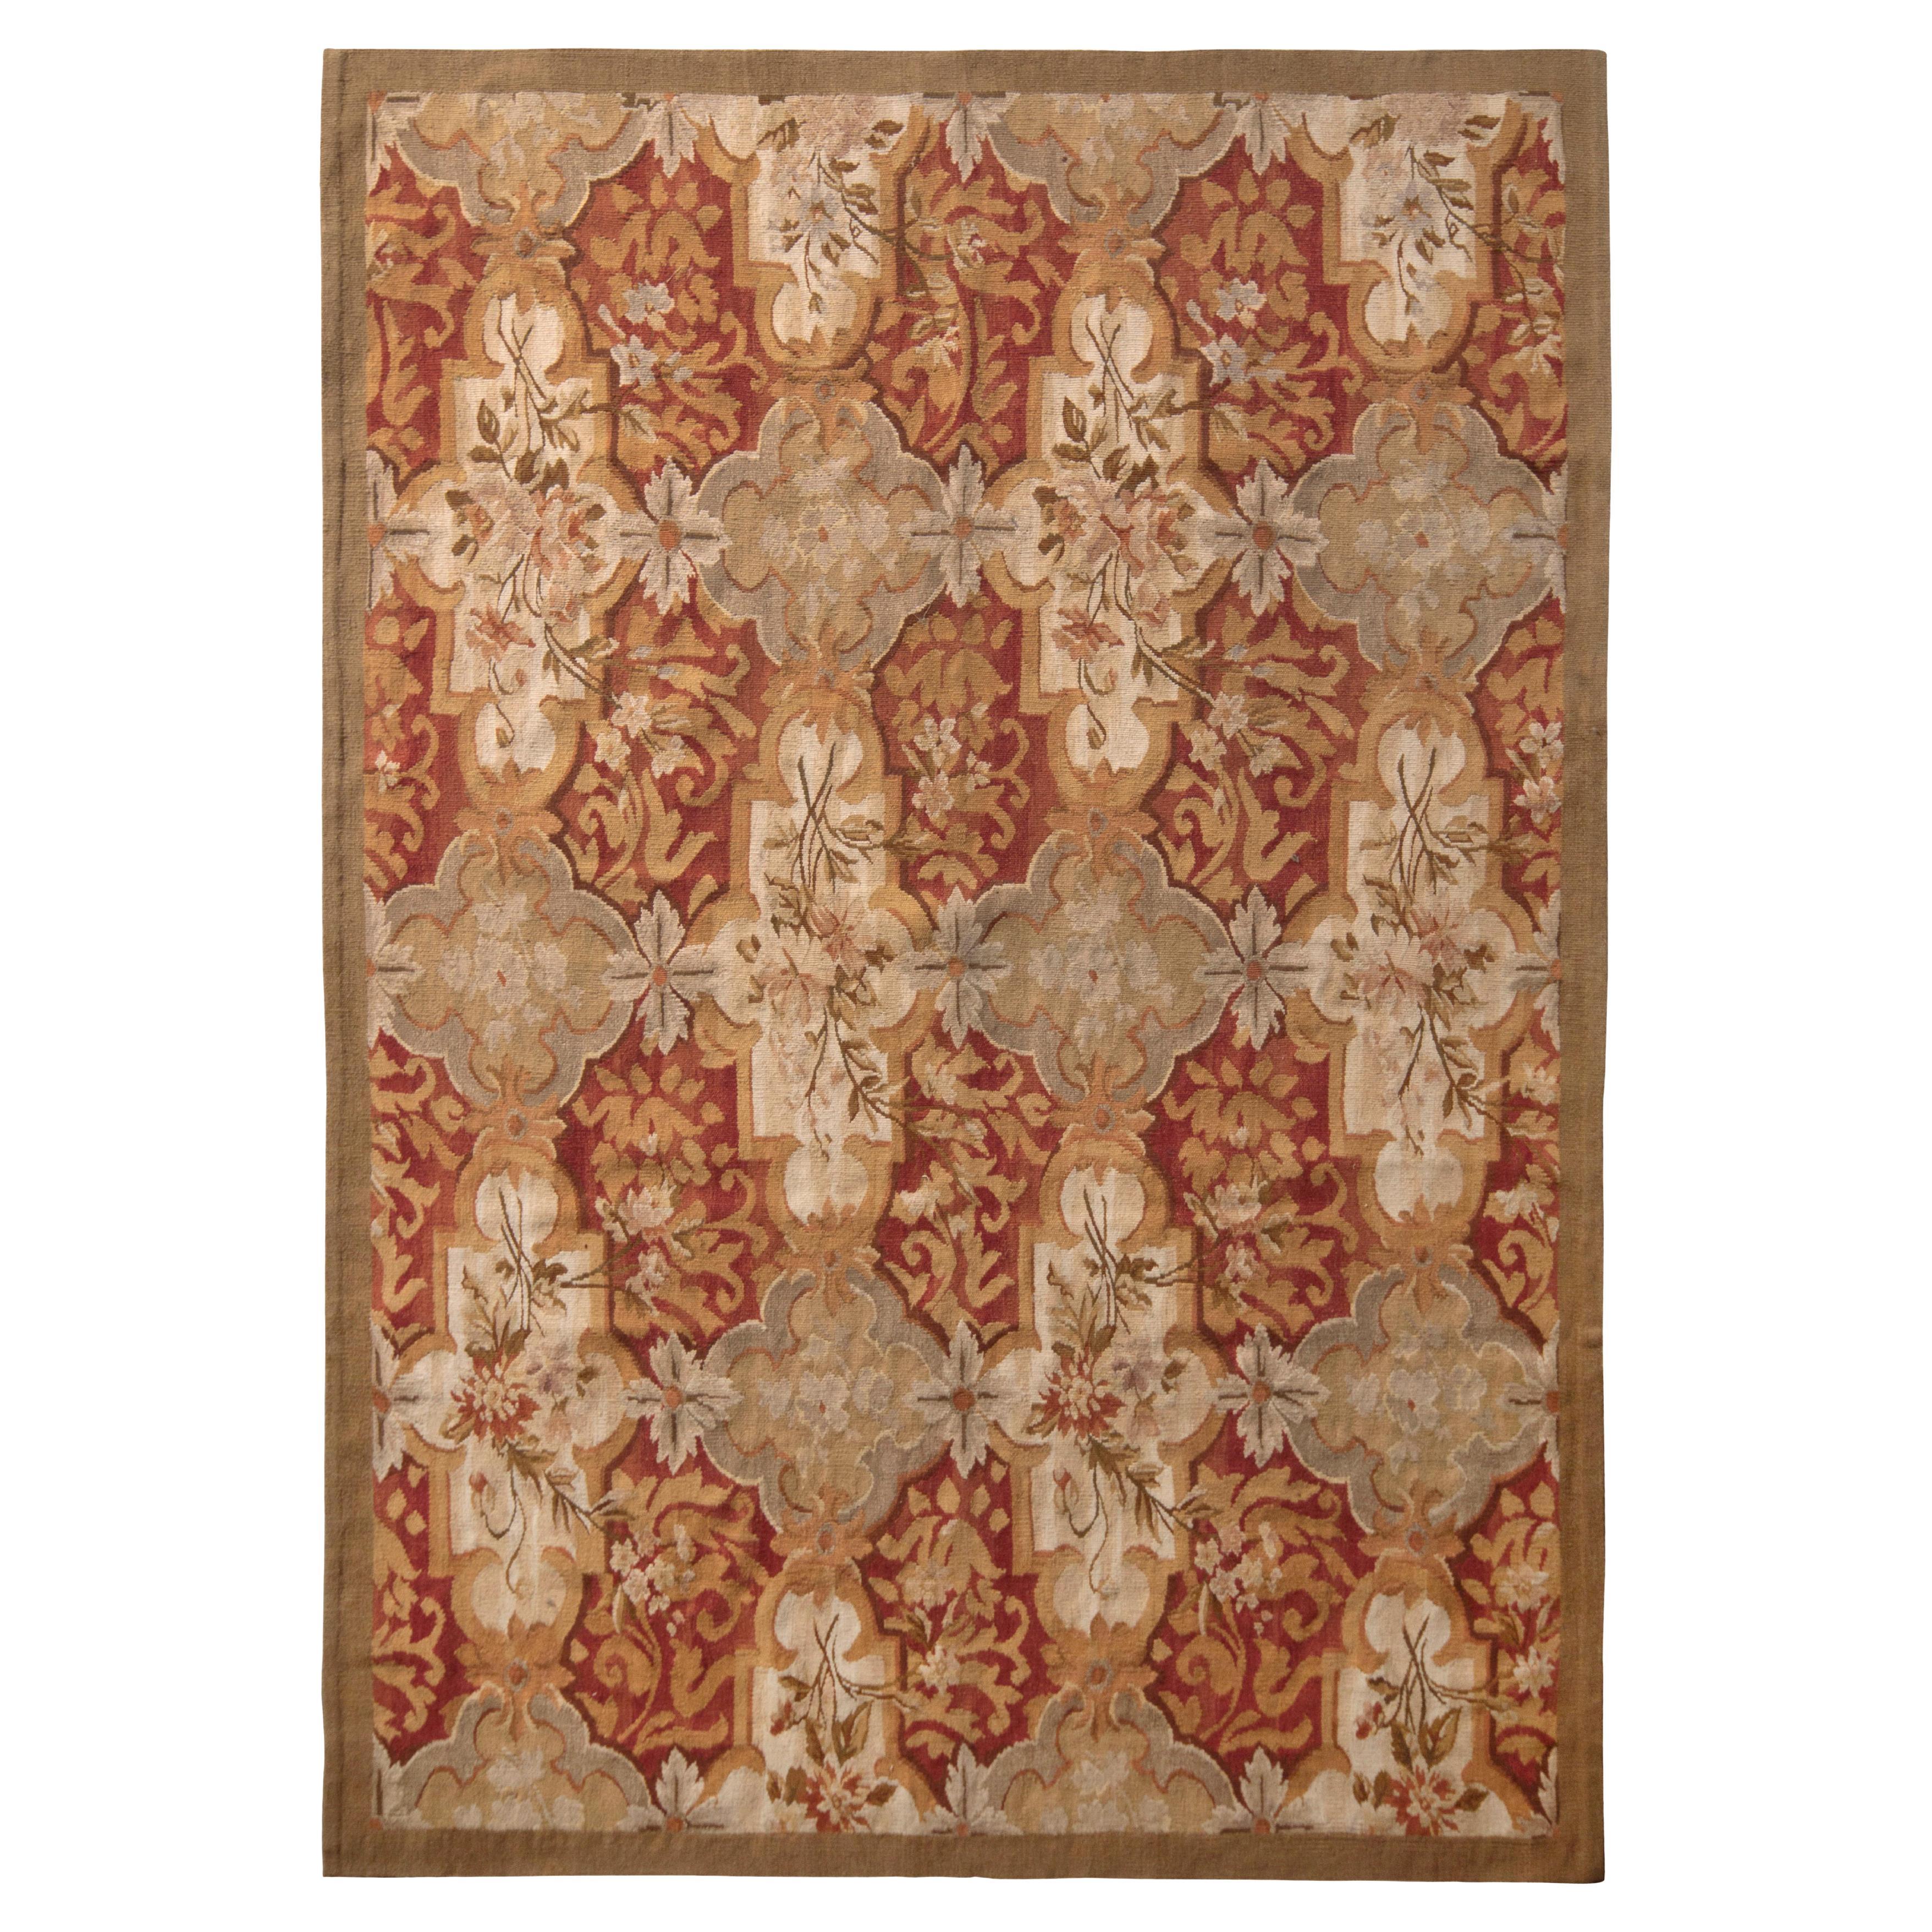 Tapis et motif floral beige-marron rouge à tissage plat de style Aubusson de Kilim